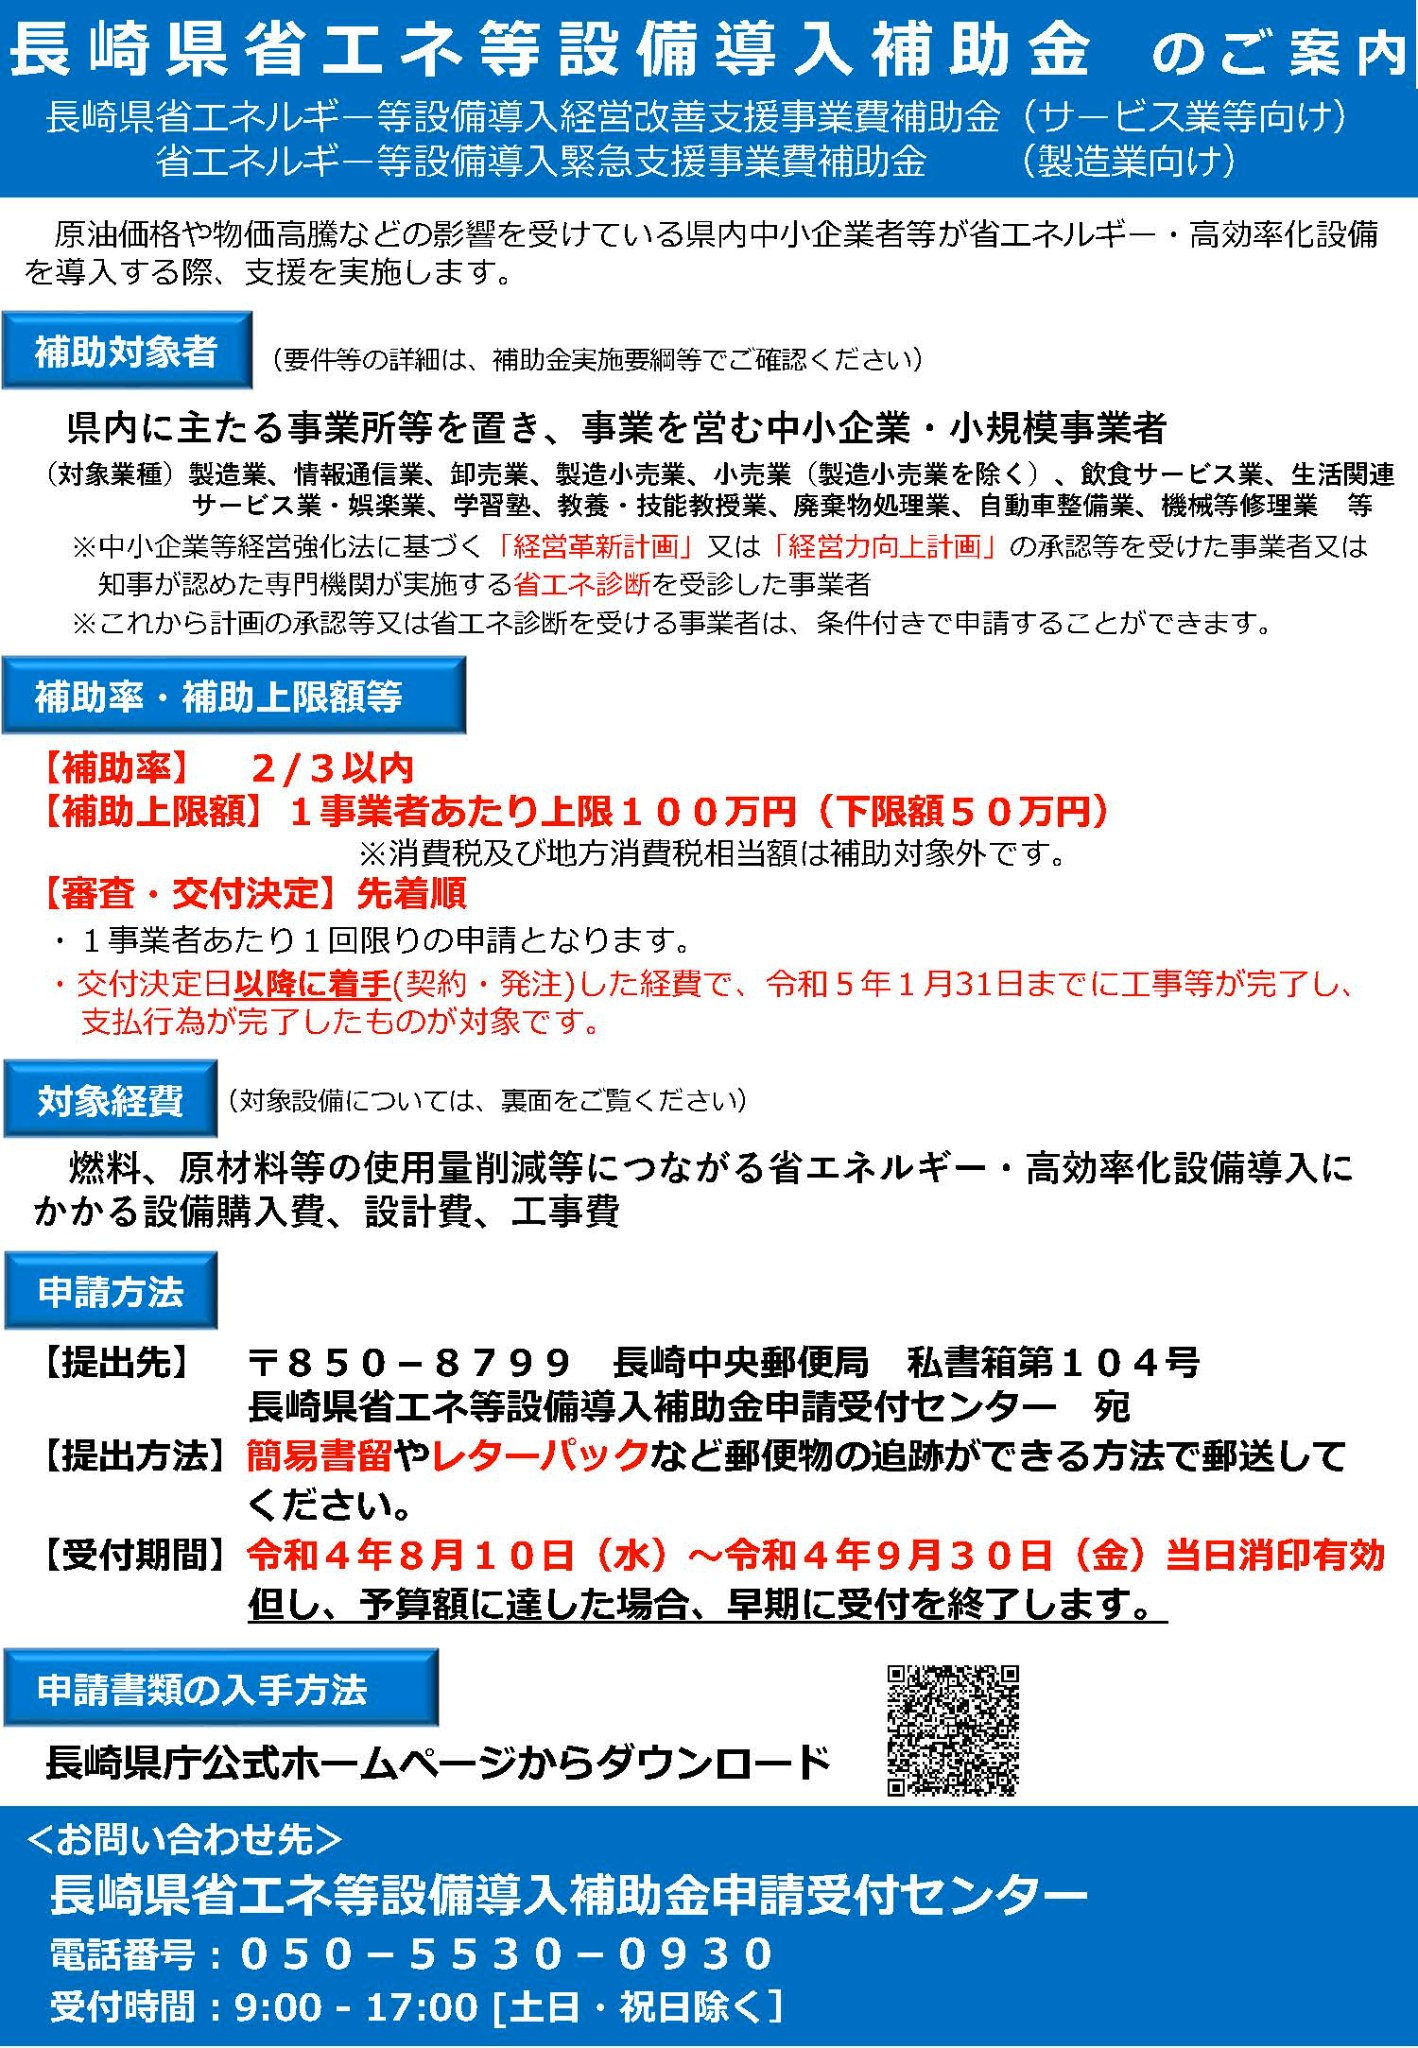 「長崎県省エネルギー等設備導入補助金」申請開始のお知らせ